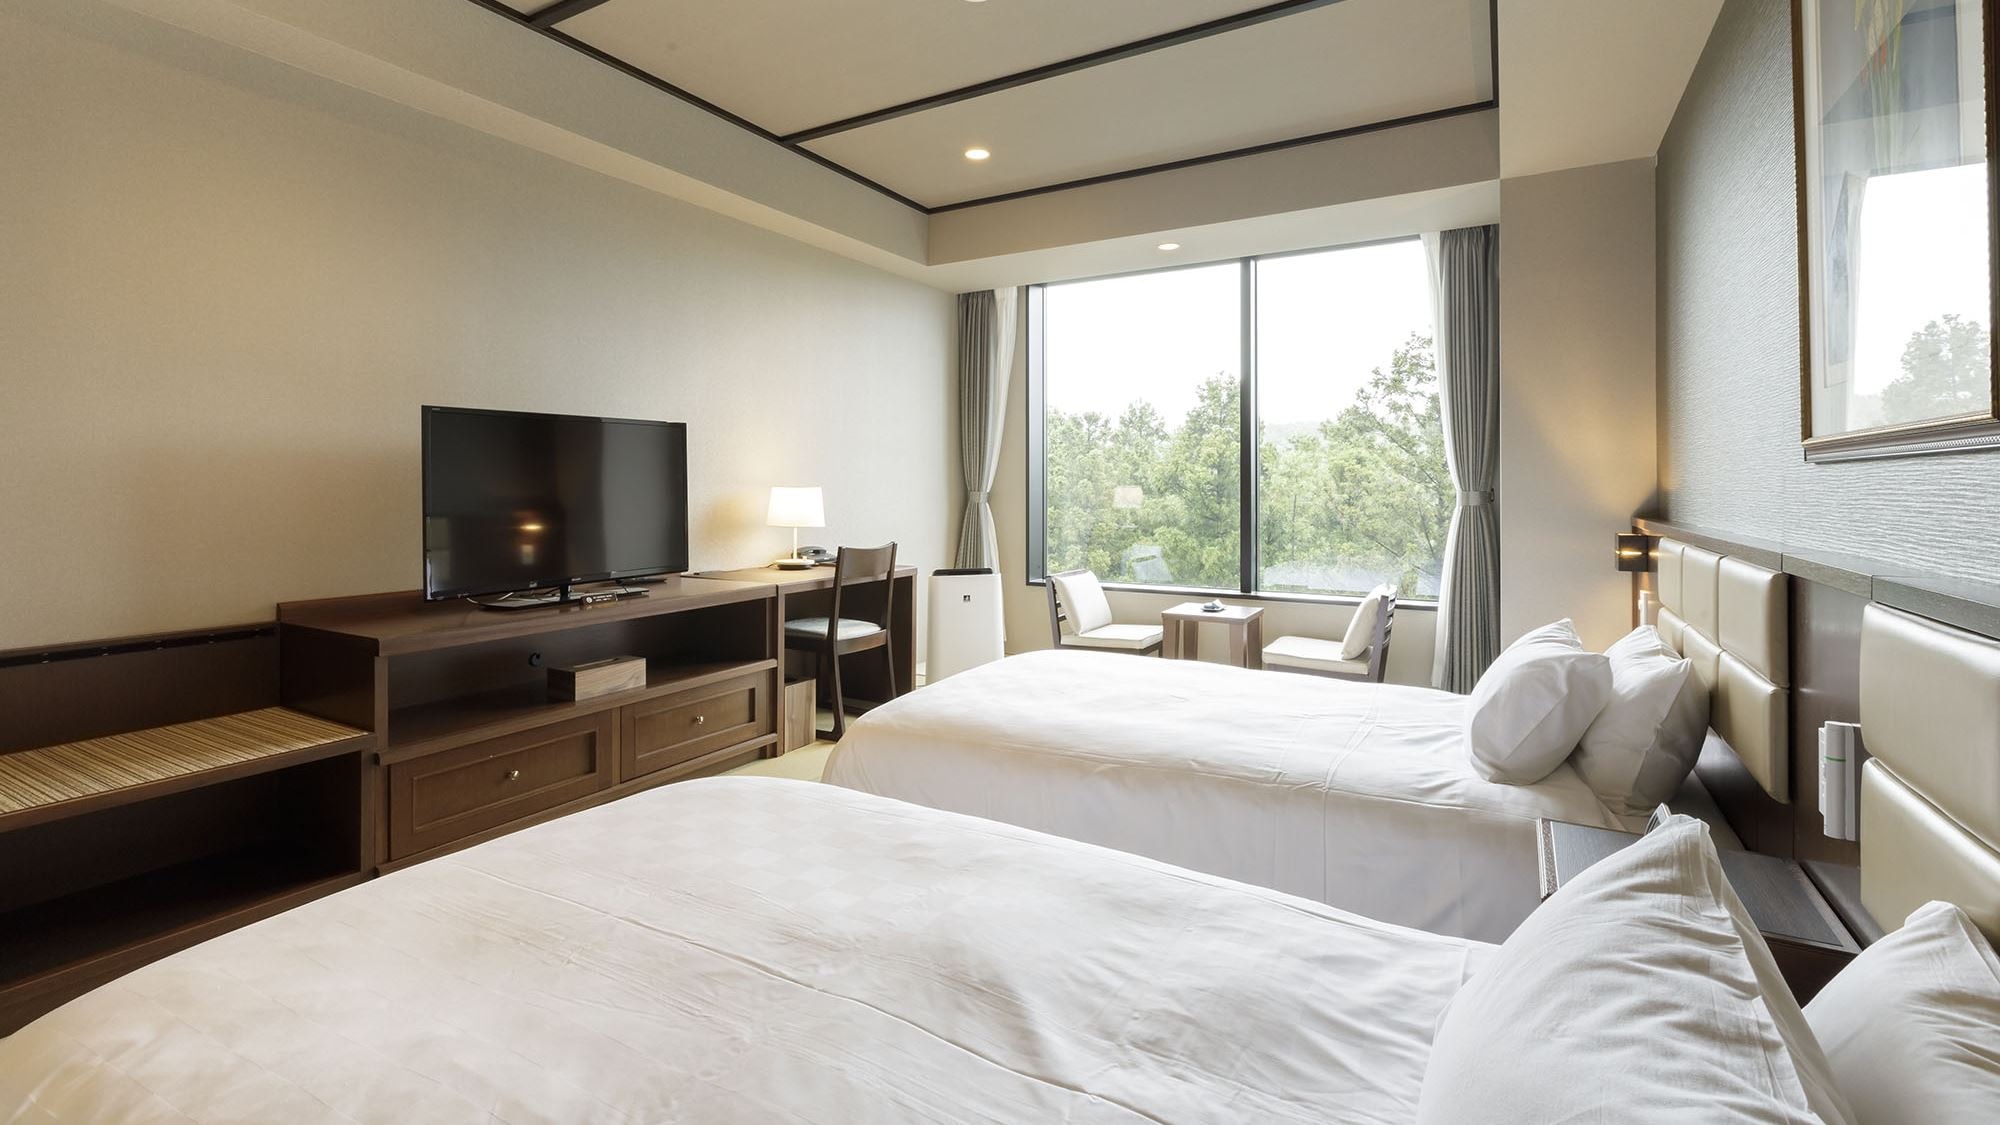 標準 [日式雙床房] 西式房間的便利與日式房間的寧靜相結合的舒適房間。